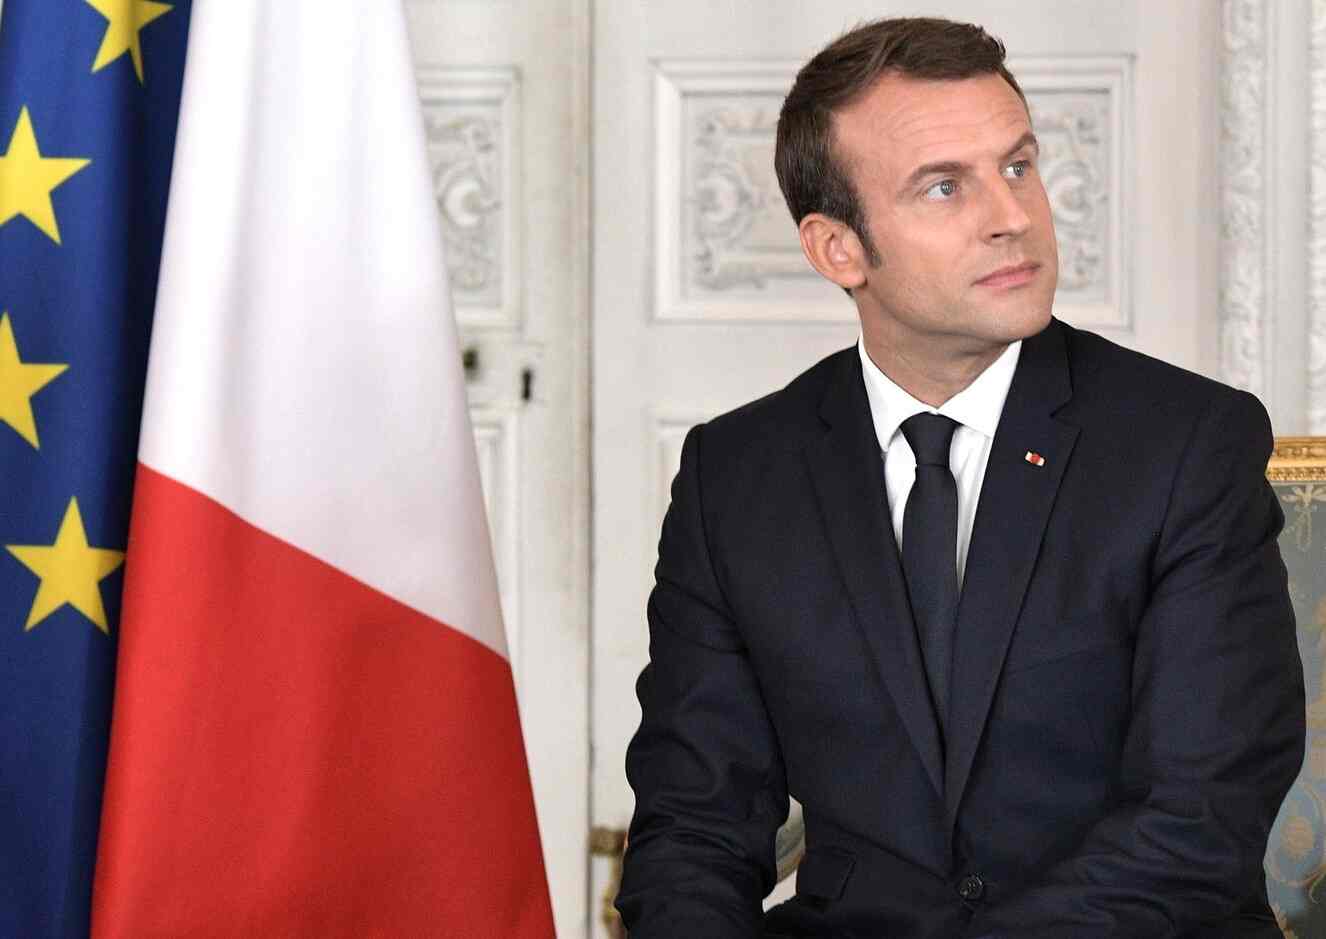 De olho no voto muçulmano, Macron defende o uso do véu e a liberdade religiosa